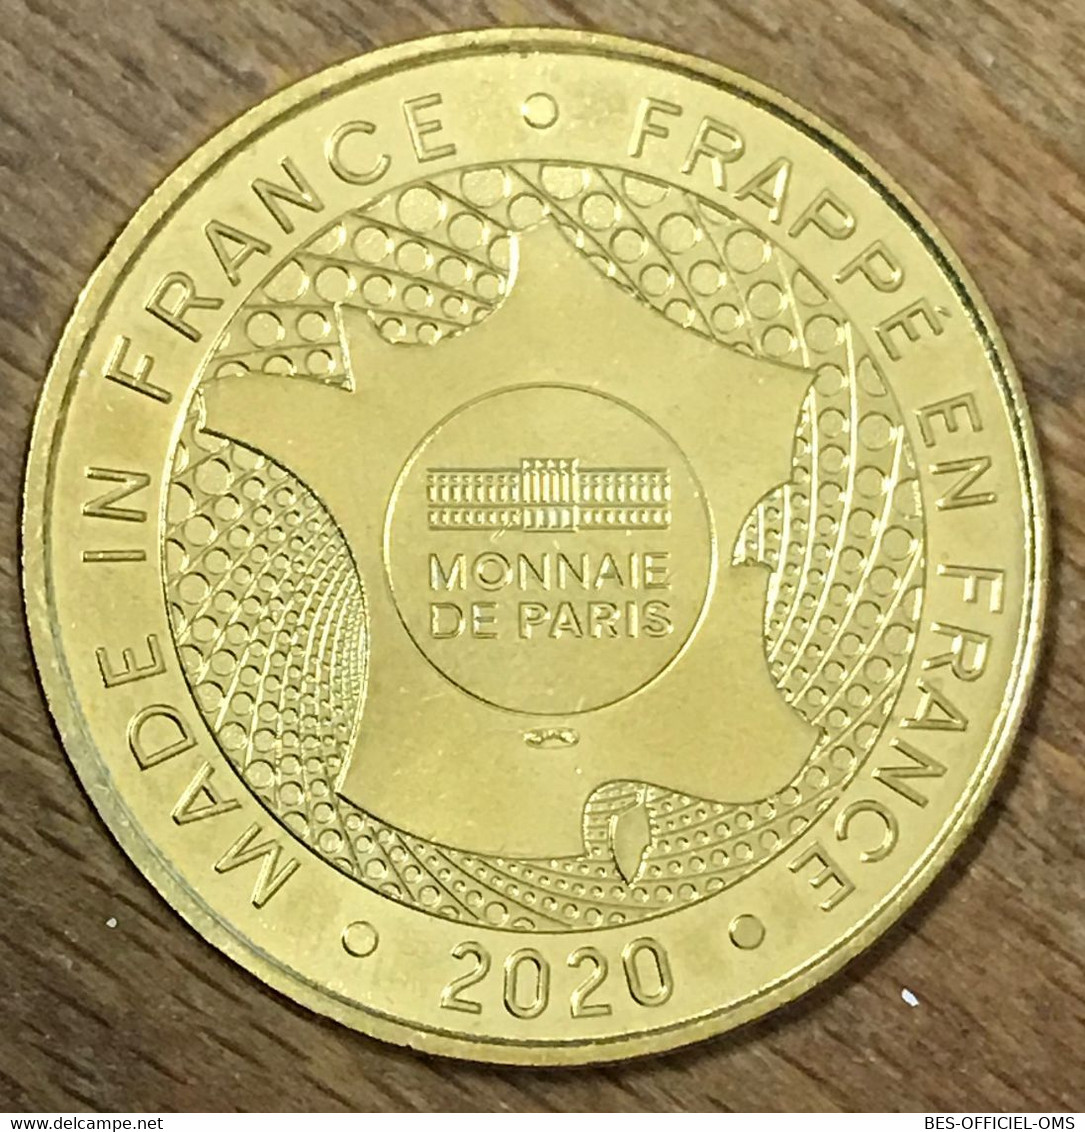 86 FUTUROSCOPE LES PAVILLONS MDP 2020 MÉDAILLE SOUVENIR MONNAIE DE PARIS JETON TOURISTIQUE MEDALS COINS TOKENS - 2020